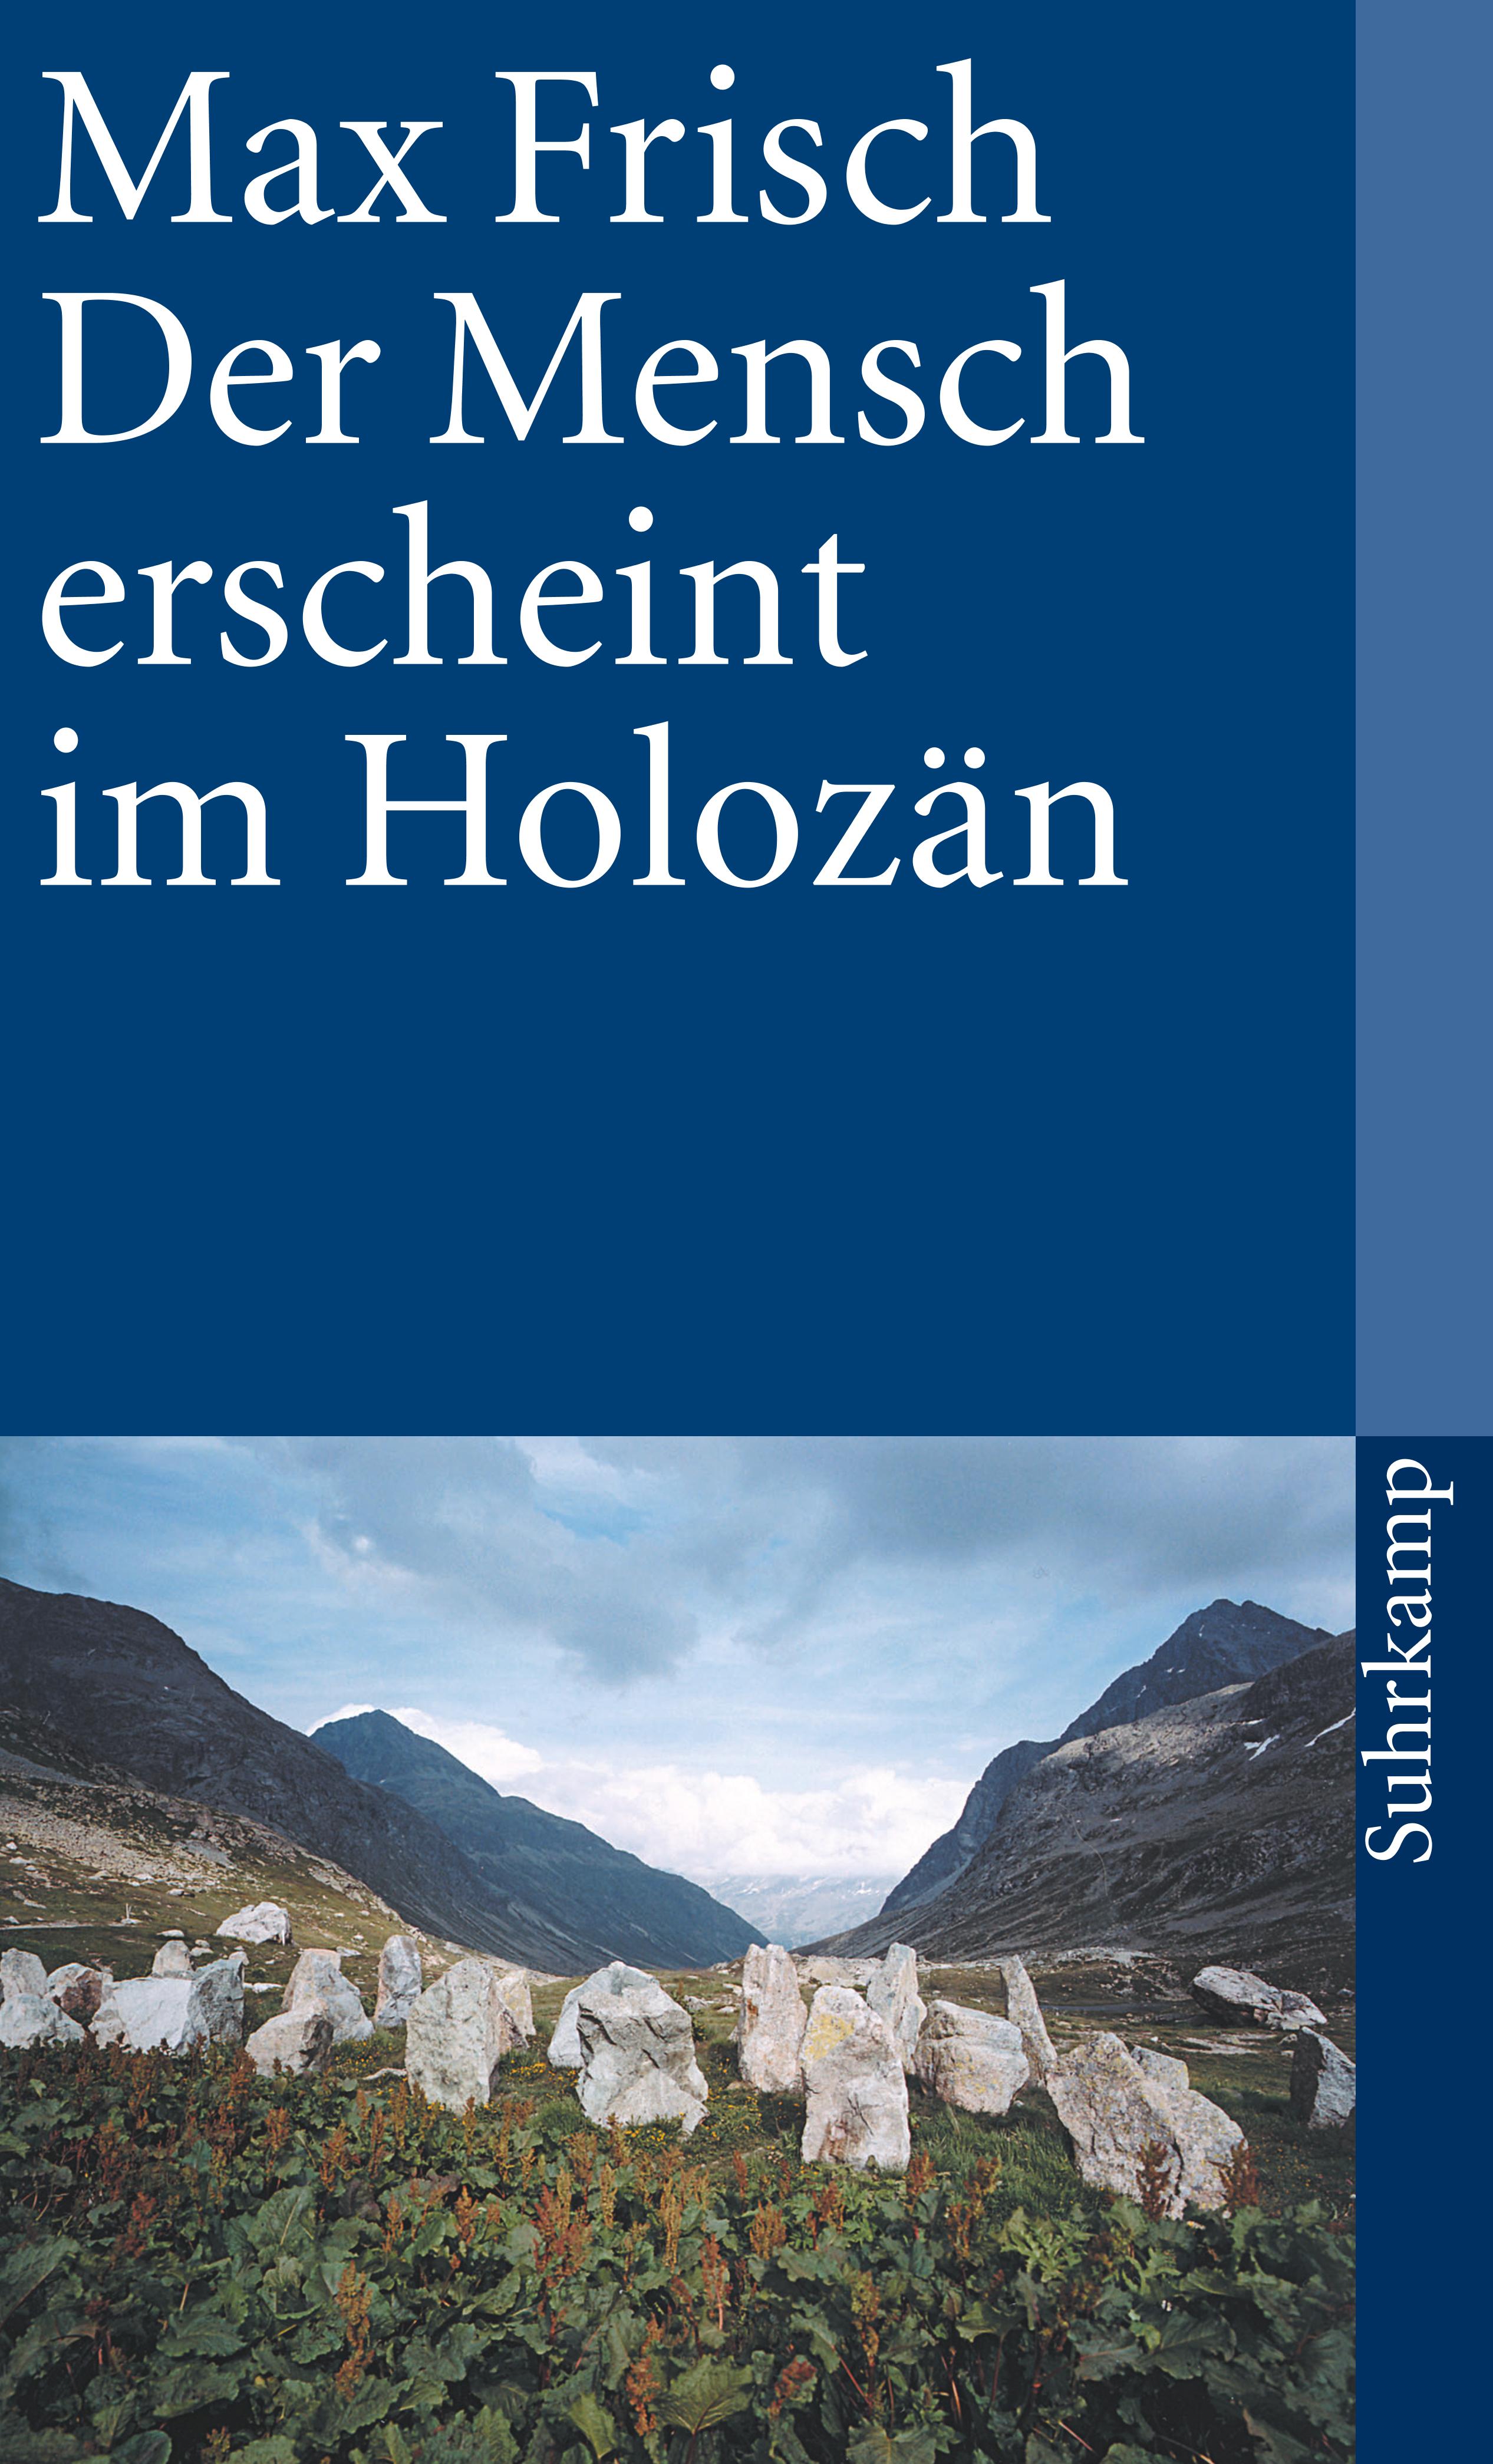 Der Mensch erscheint im Holozän. Buch von Max Frisch (Suhrkamp Verlag)